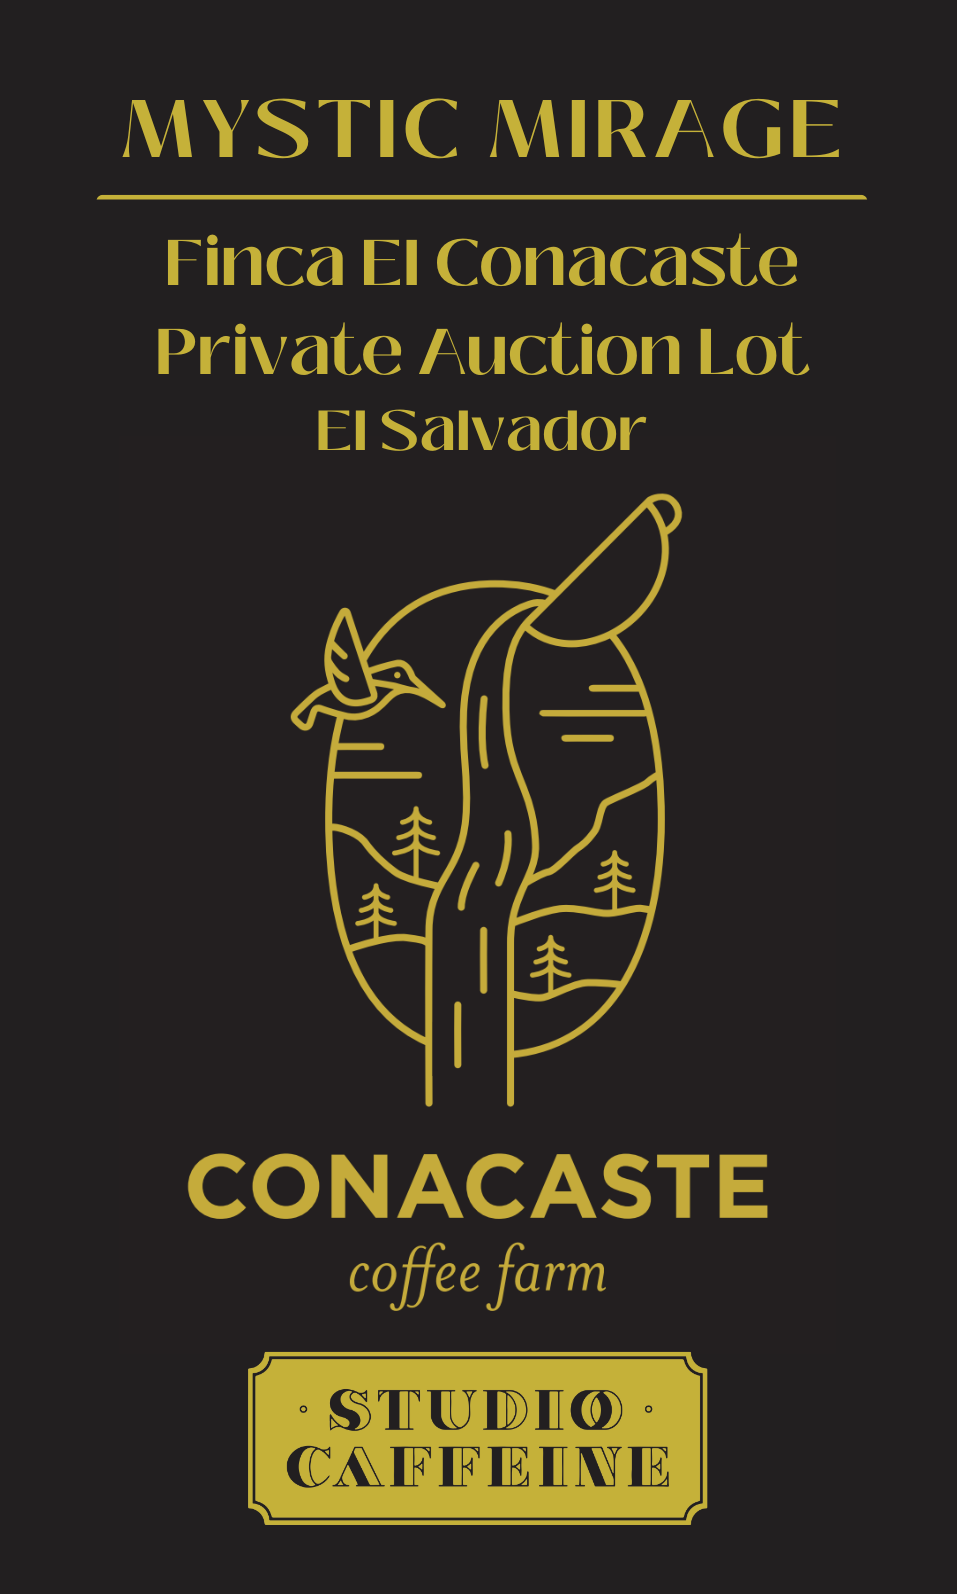 El Salvador Finca El Conacaste Private Auction Lot "Mystic Mirage"